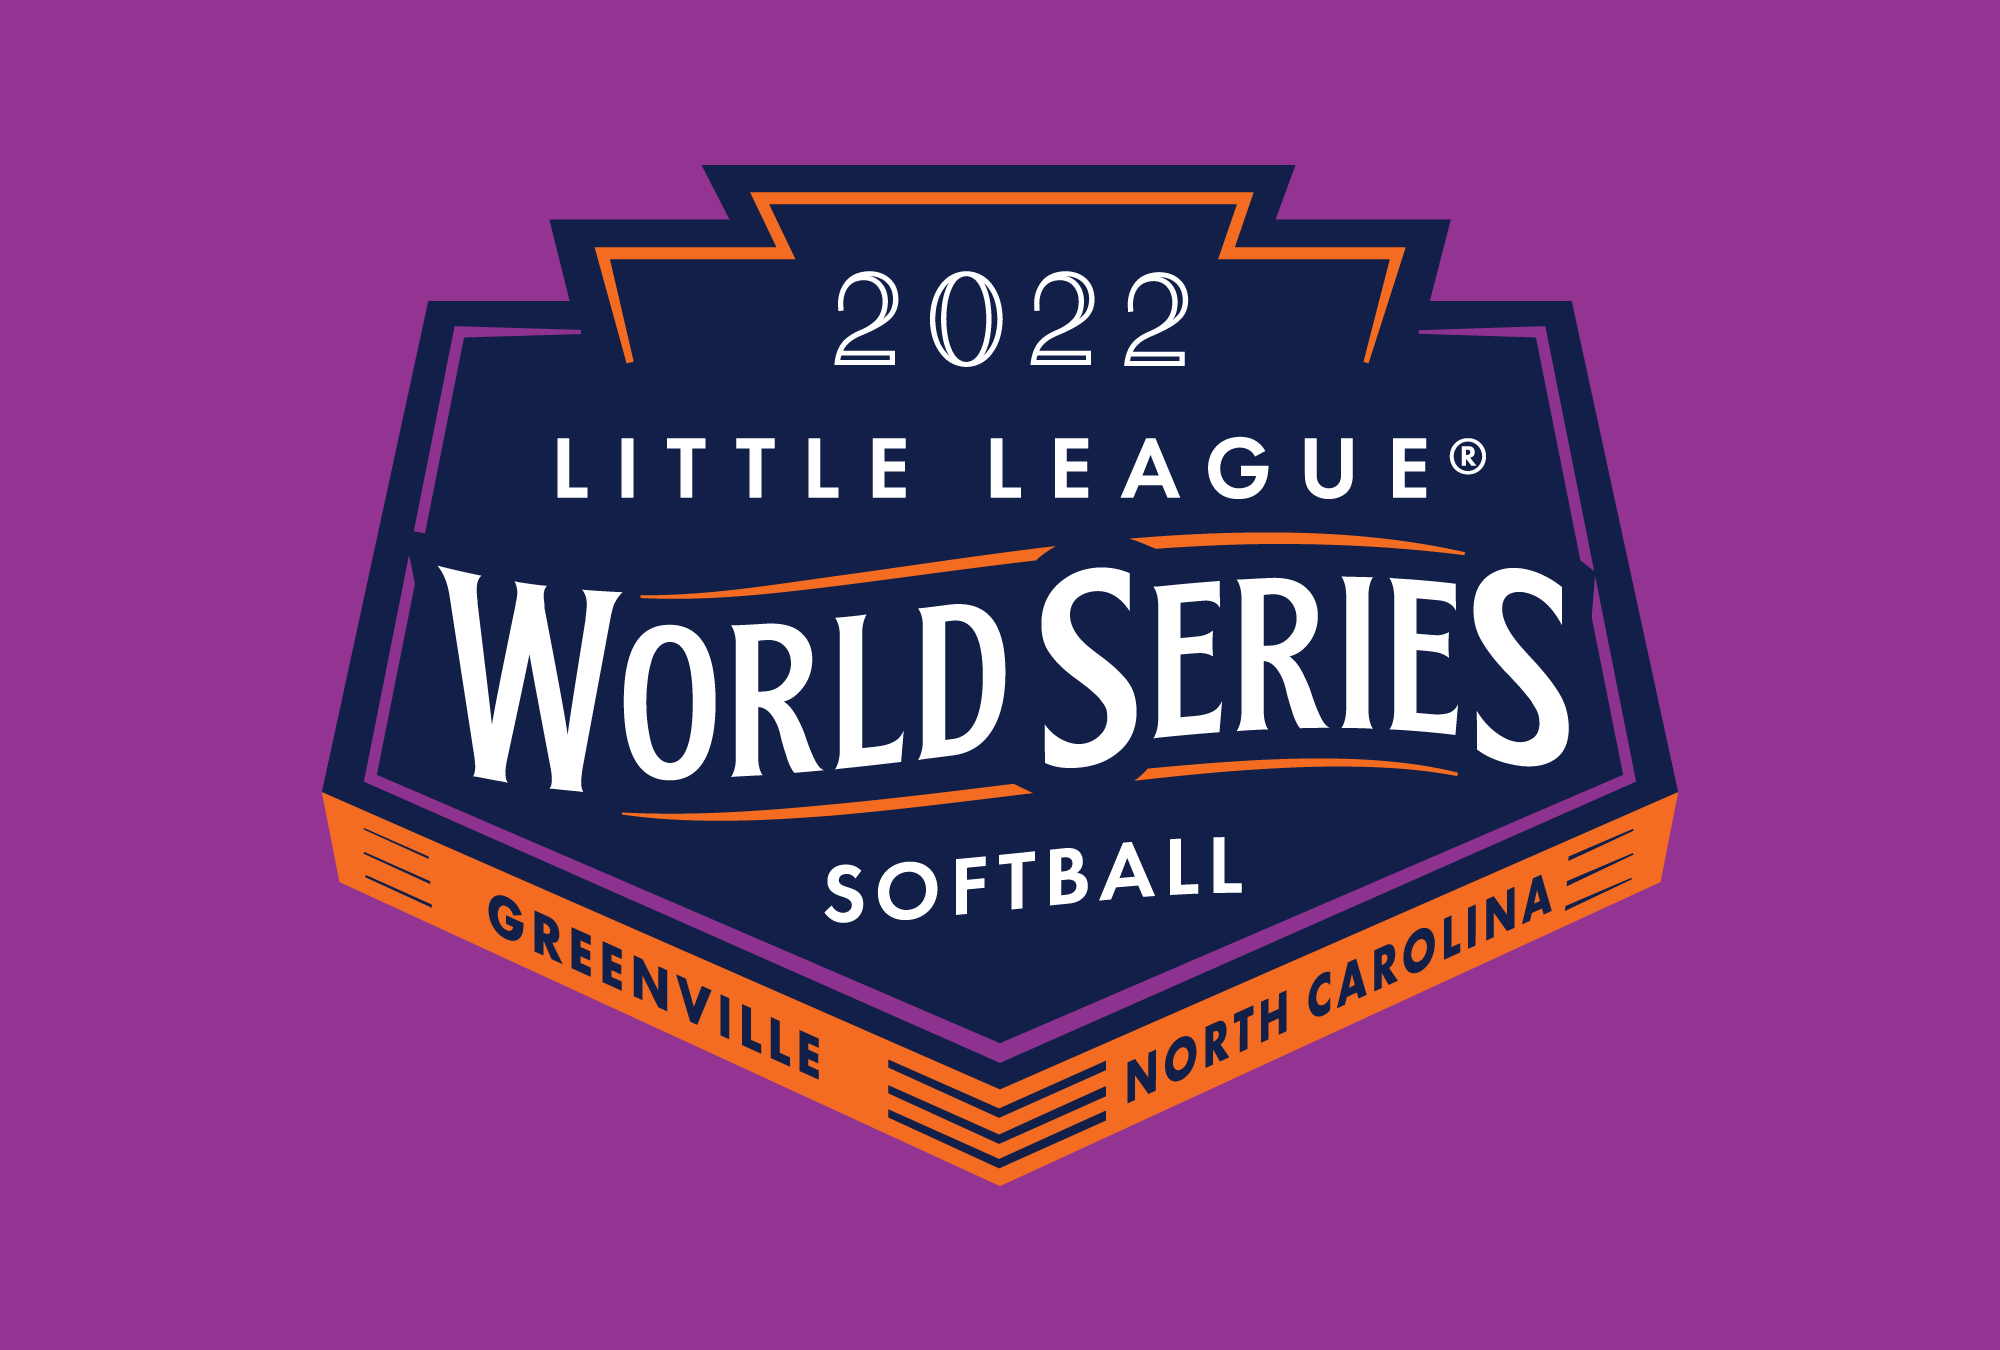 2022 Little League Softball World Series - Little League